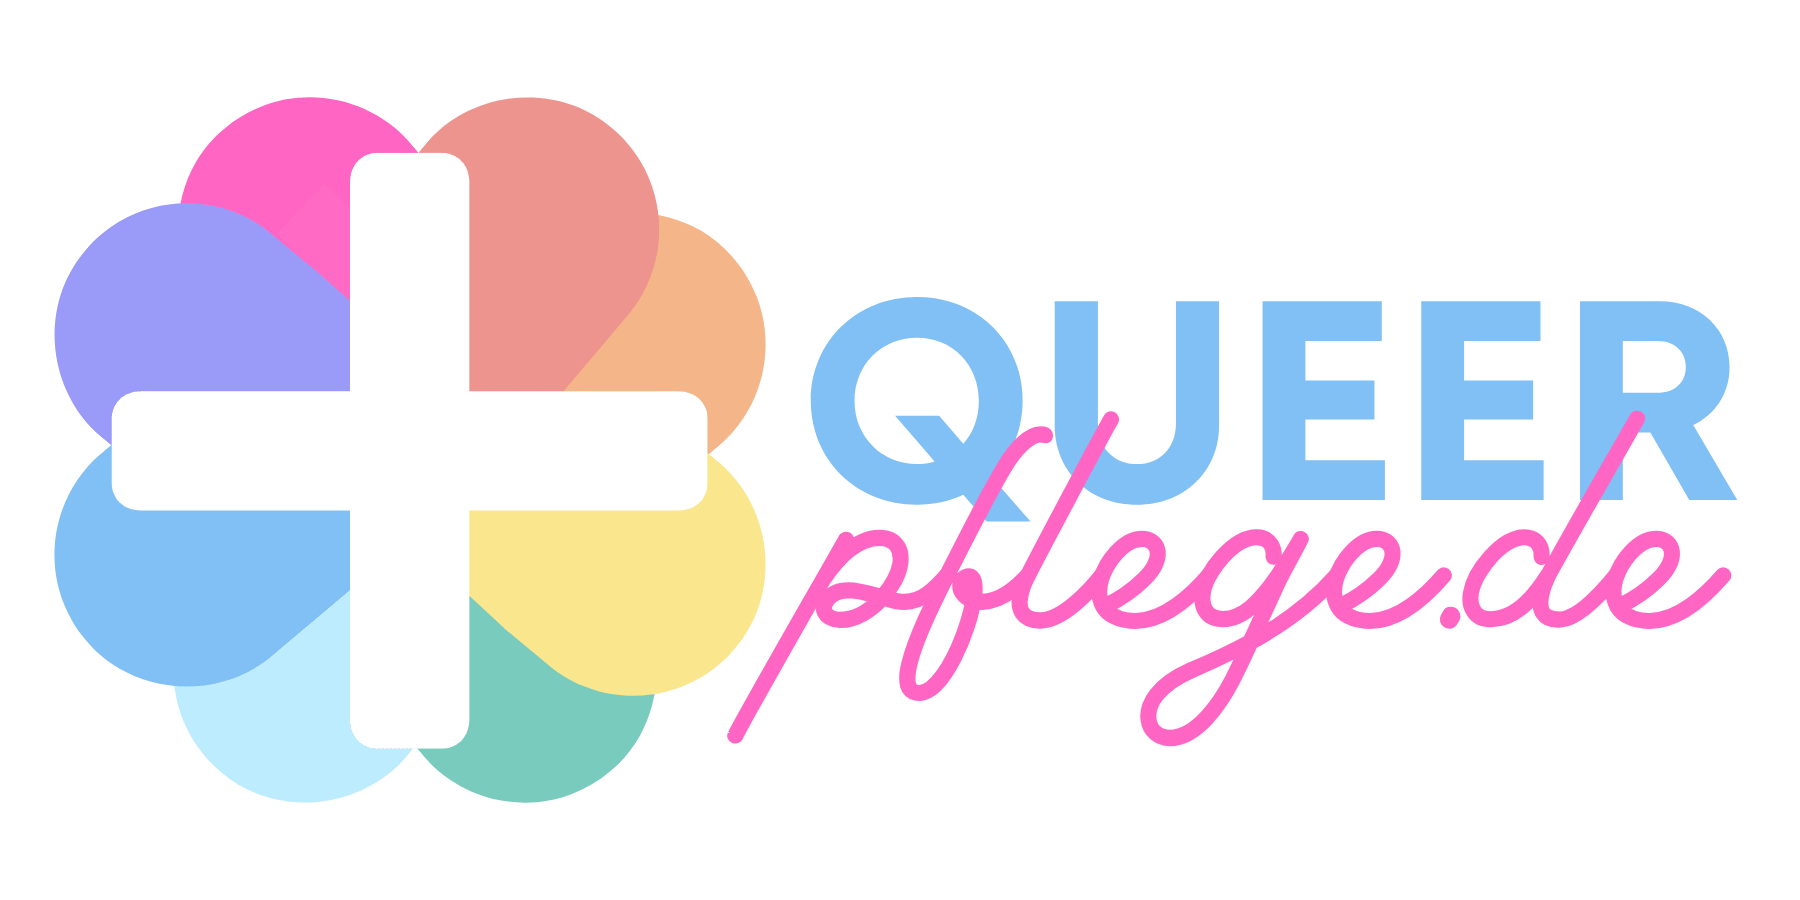 QueerPflege-LSBTIQ-Pflege Das Logo von Queer Pflege.de zeigt links ein weißes Kreuz über einer bunten Blume und rechts den Text „Queer Pflege.de“ in blauer und rosa Schrift, als Symbol für die queerfreundliche Pflege für LGBTQ+-Senioren.